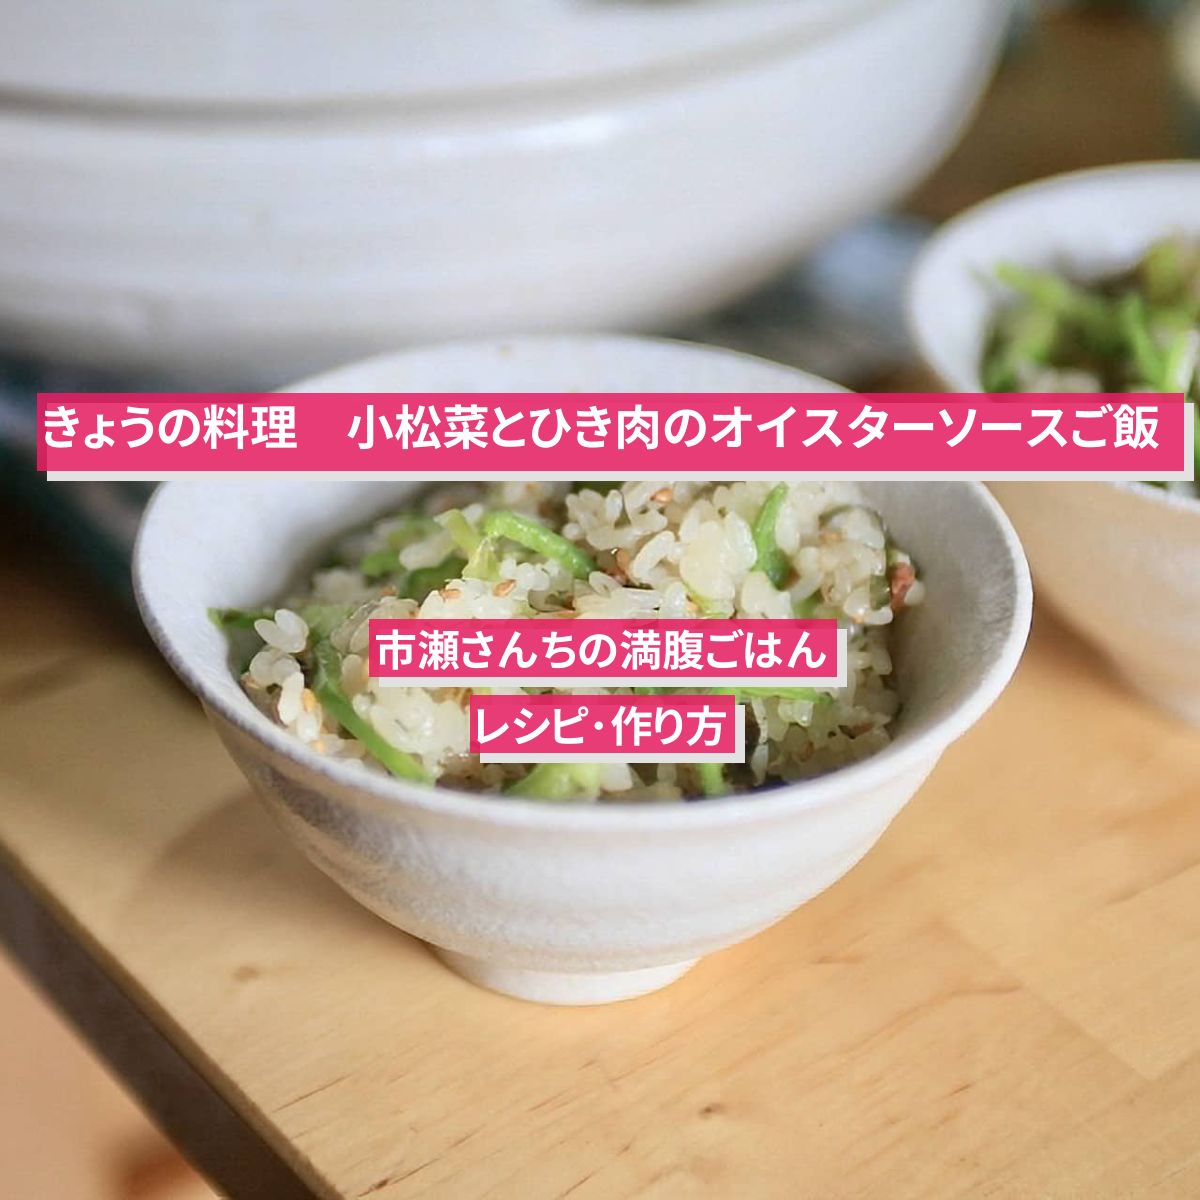 【きょうの料理】『小松菜とひき肉のオイスターソースご飯』のレシピ･作り方